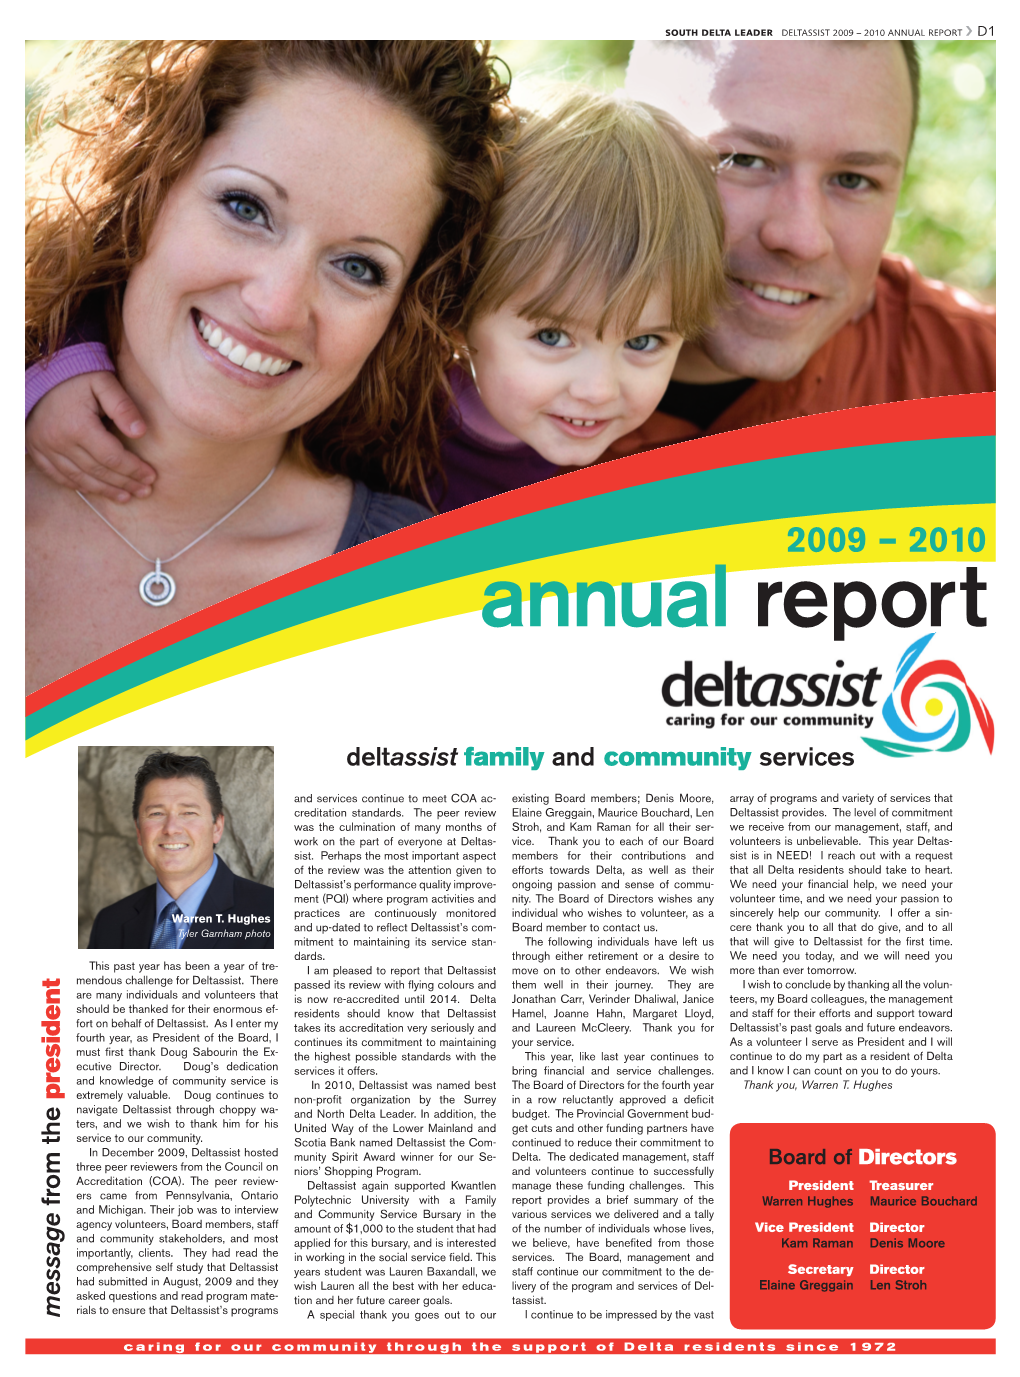 2009-2010 Deltassist Annual Report